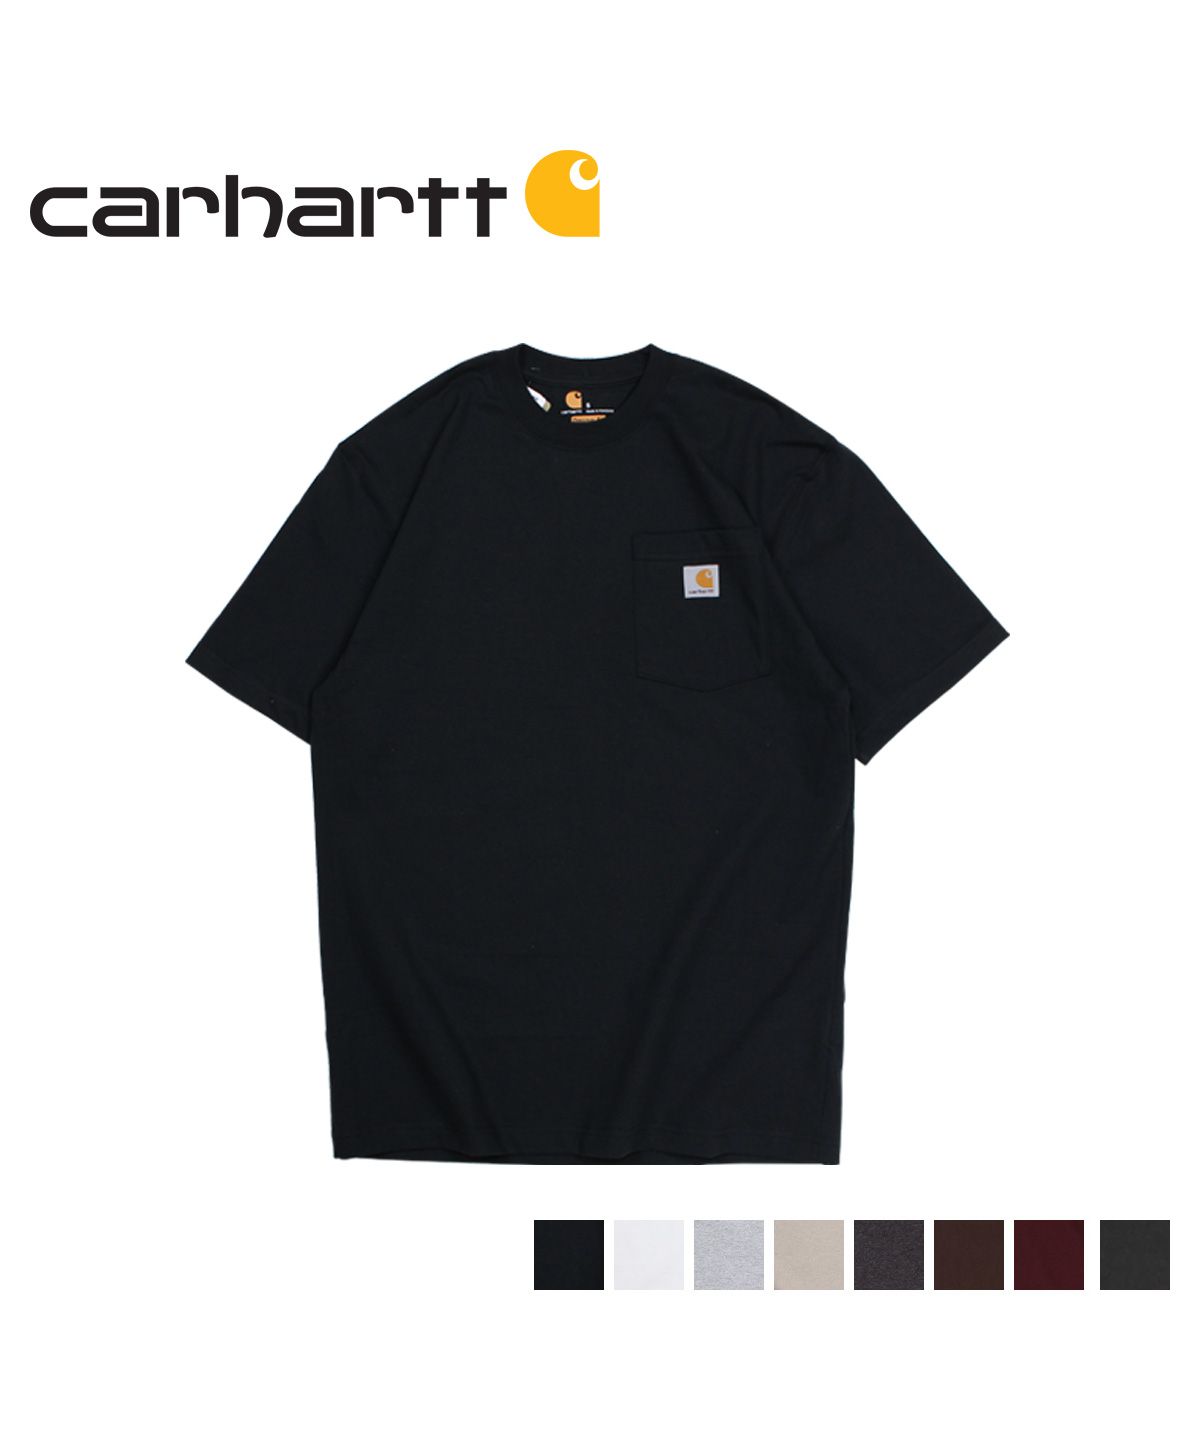 カーハート carhartt Tシャツ 半袖 メンズ ポケット ポケT WORKER 